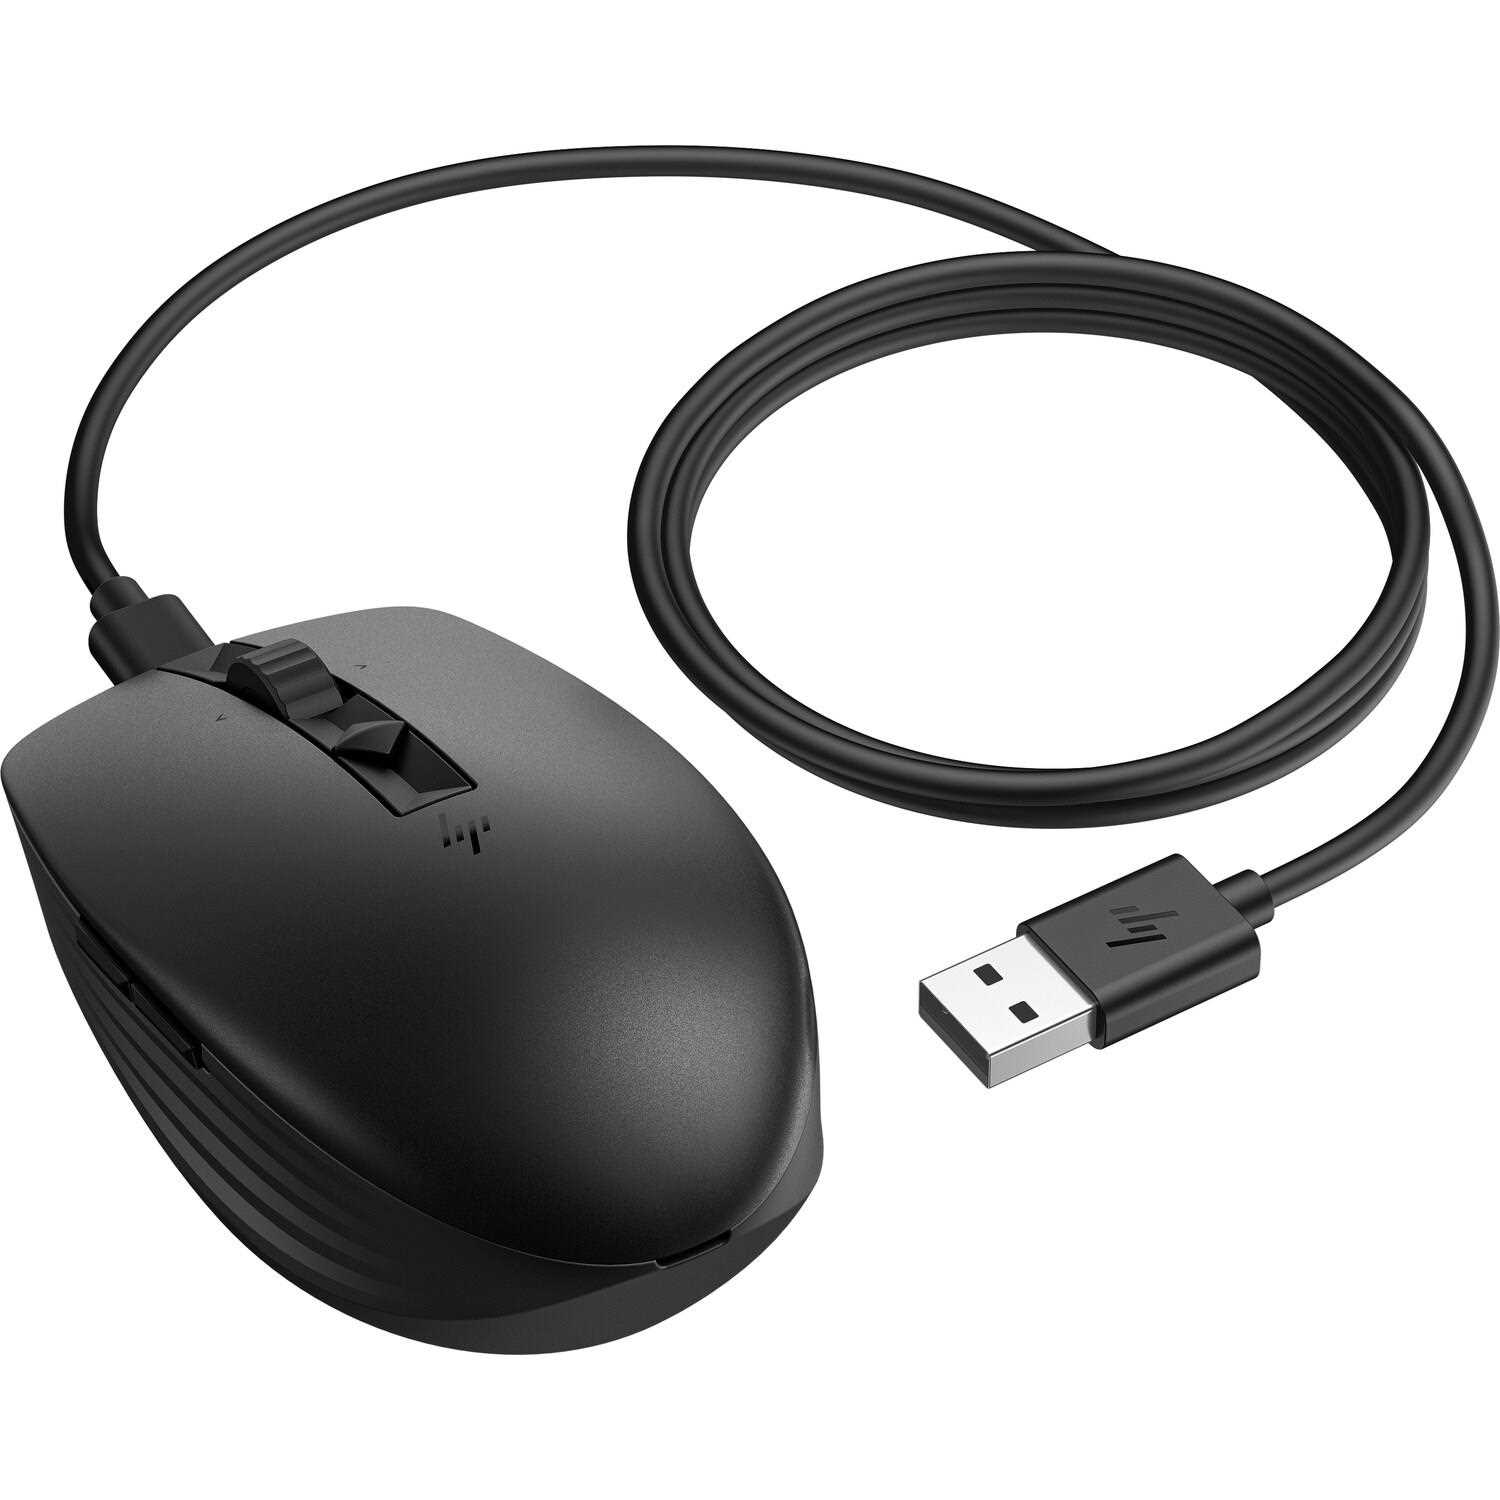 HP 710 Rechargeable Silent Mouse - bezdrátová bluetooth myš3 